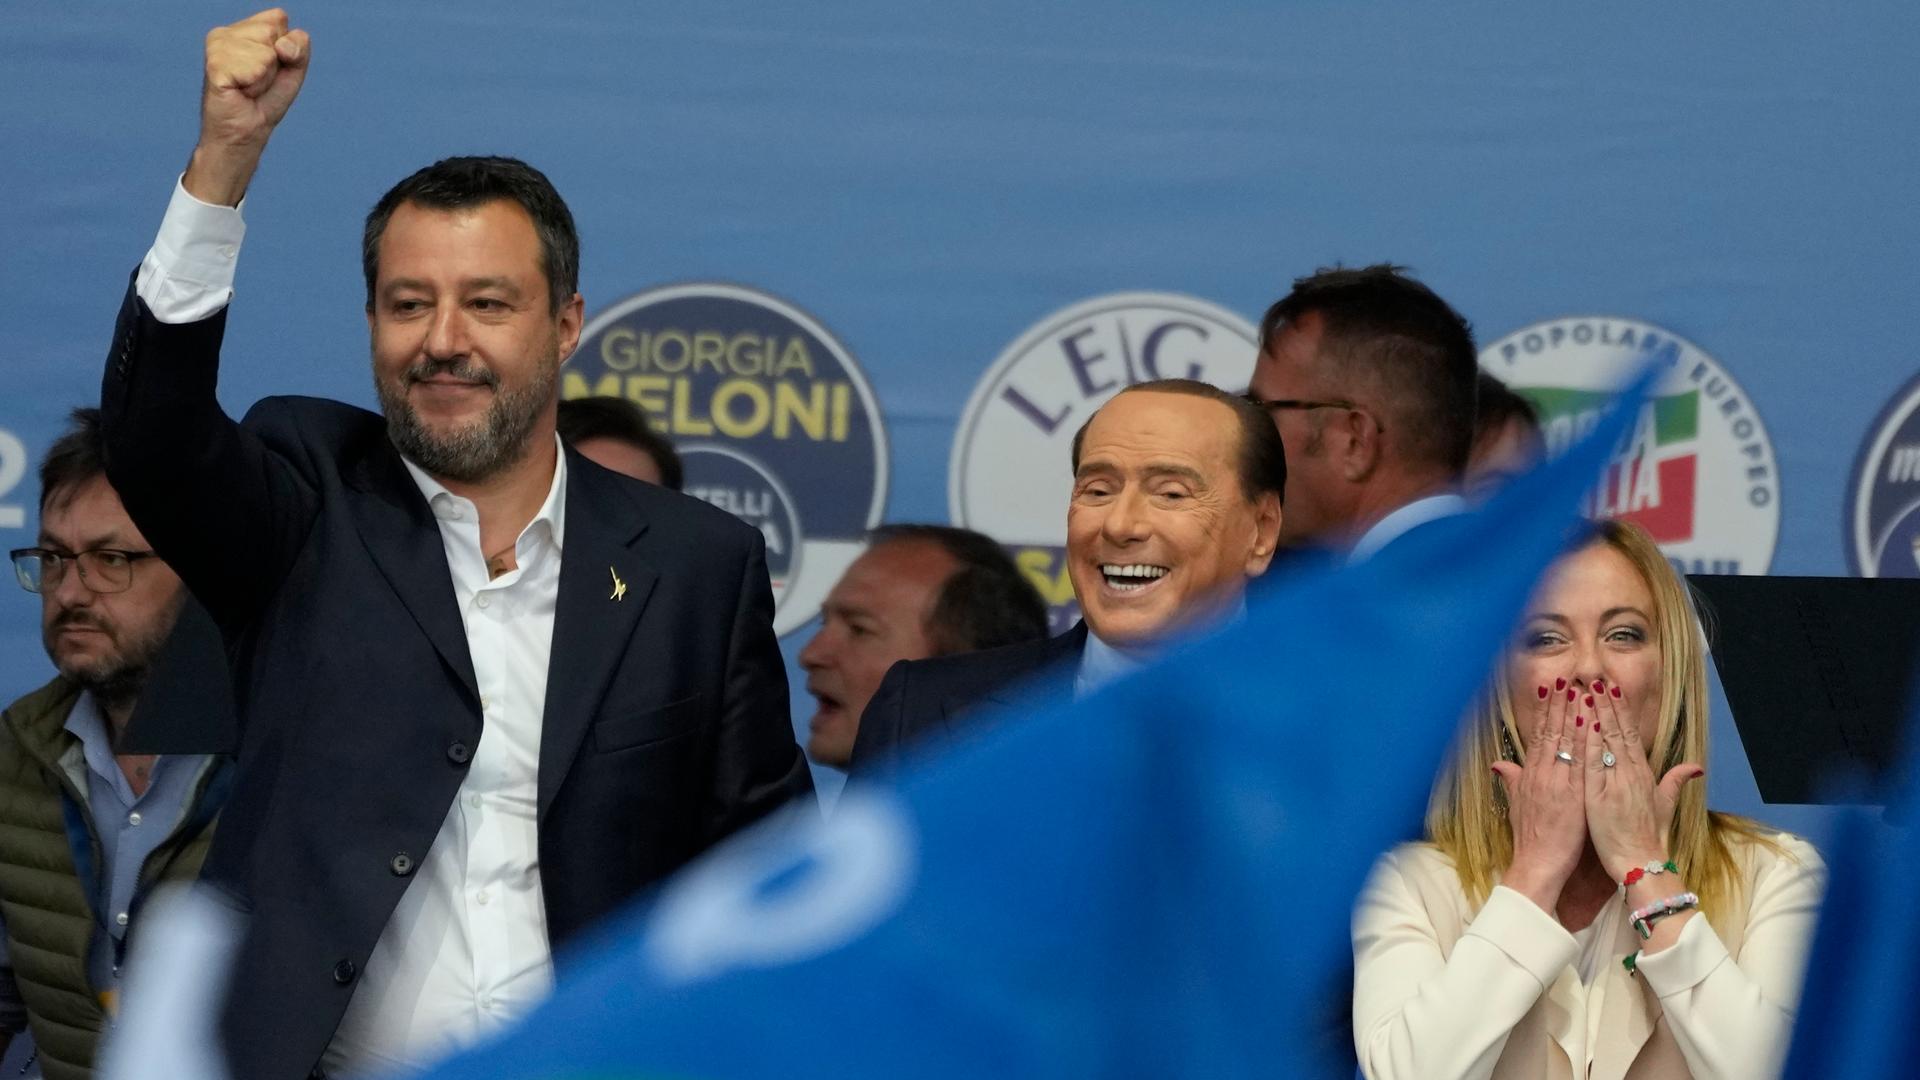 Matteo Salvini, Silvio Berlusconi und Giorgia Meloni stehen auf einer Bühne.